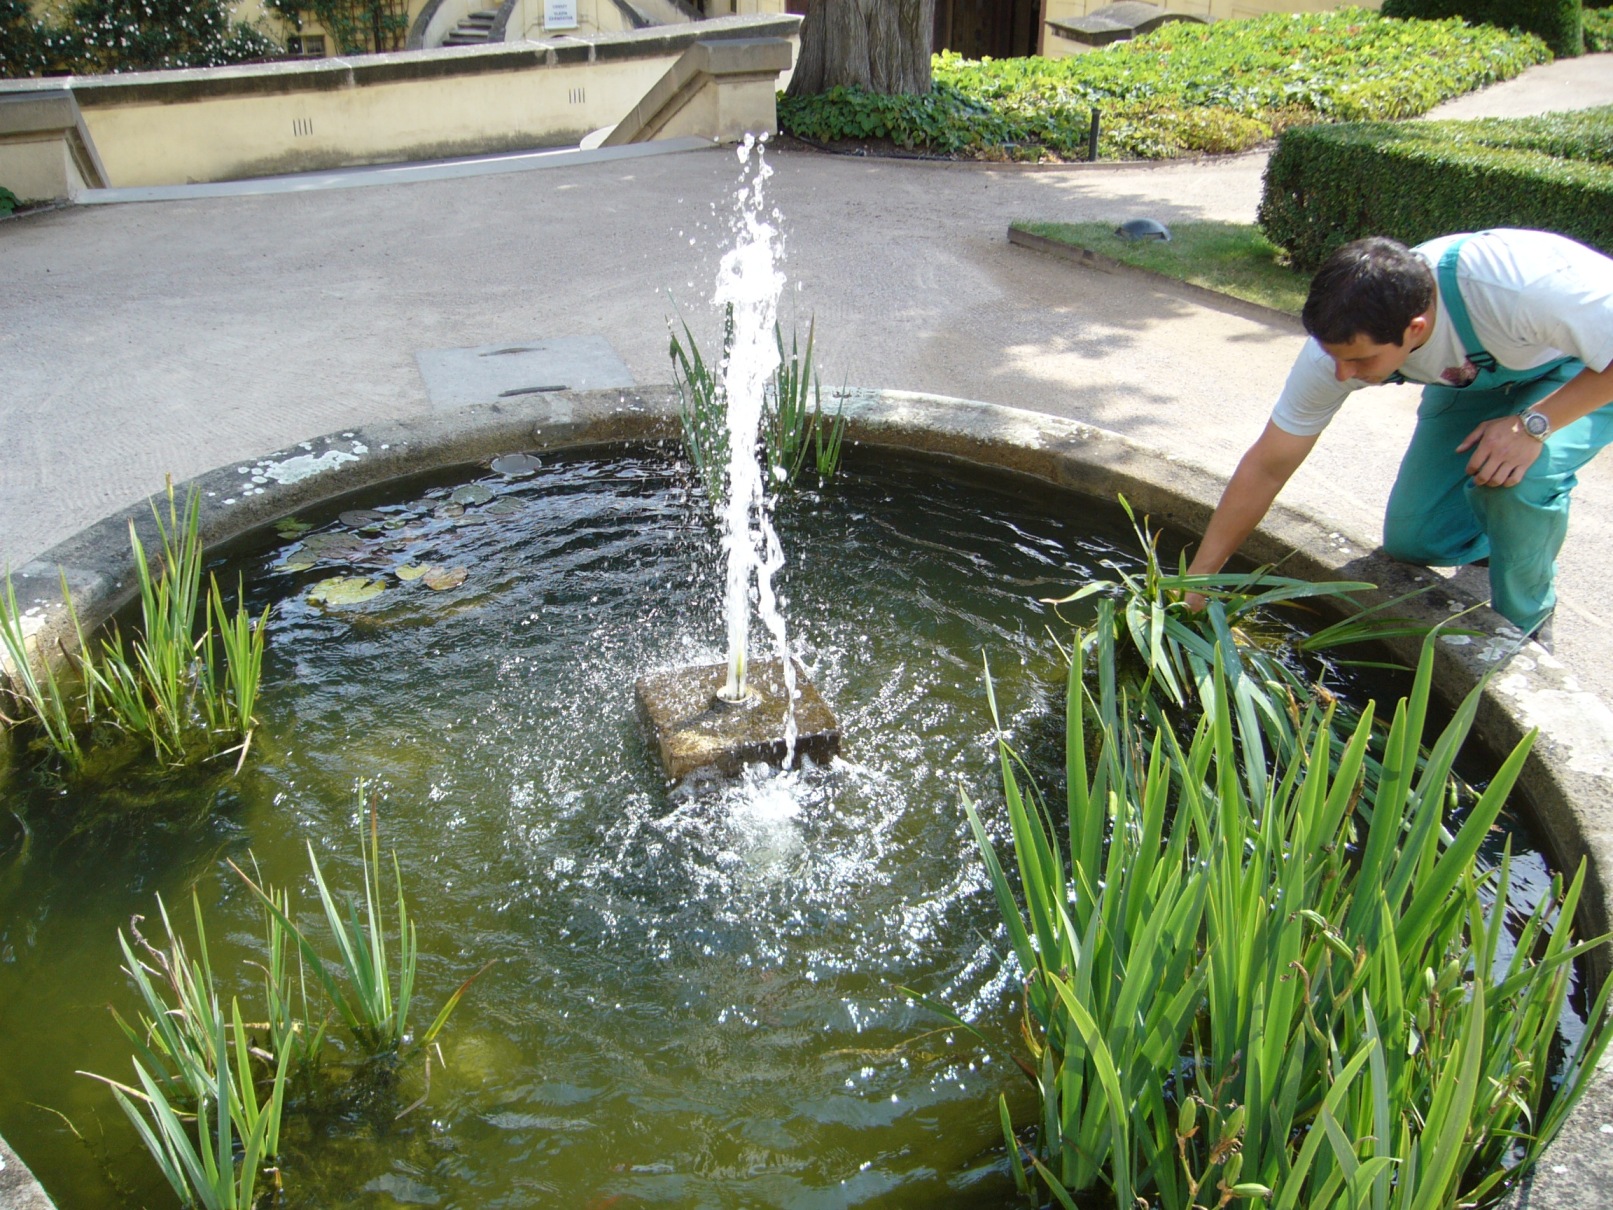 Vrtbovská zahrada - fontána